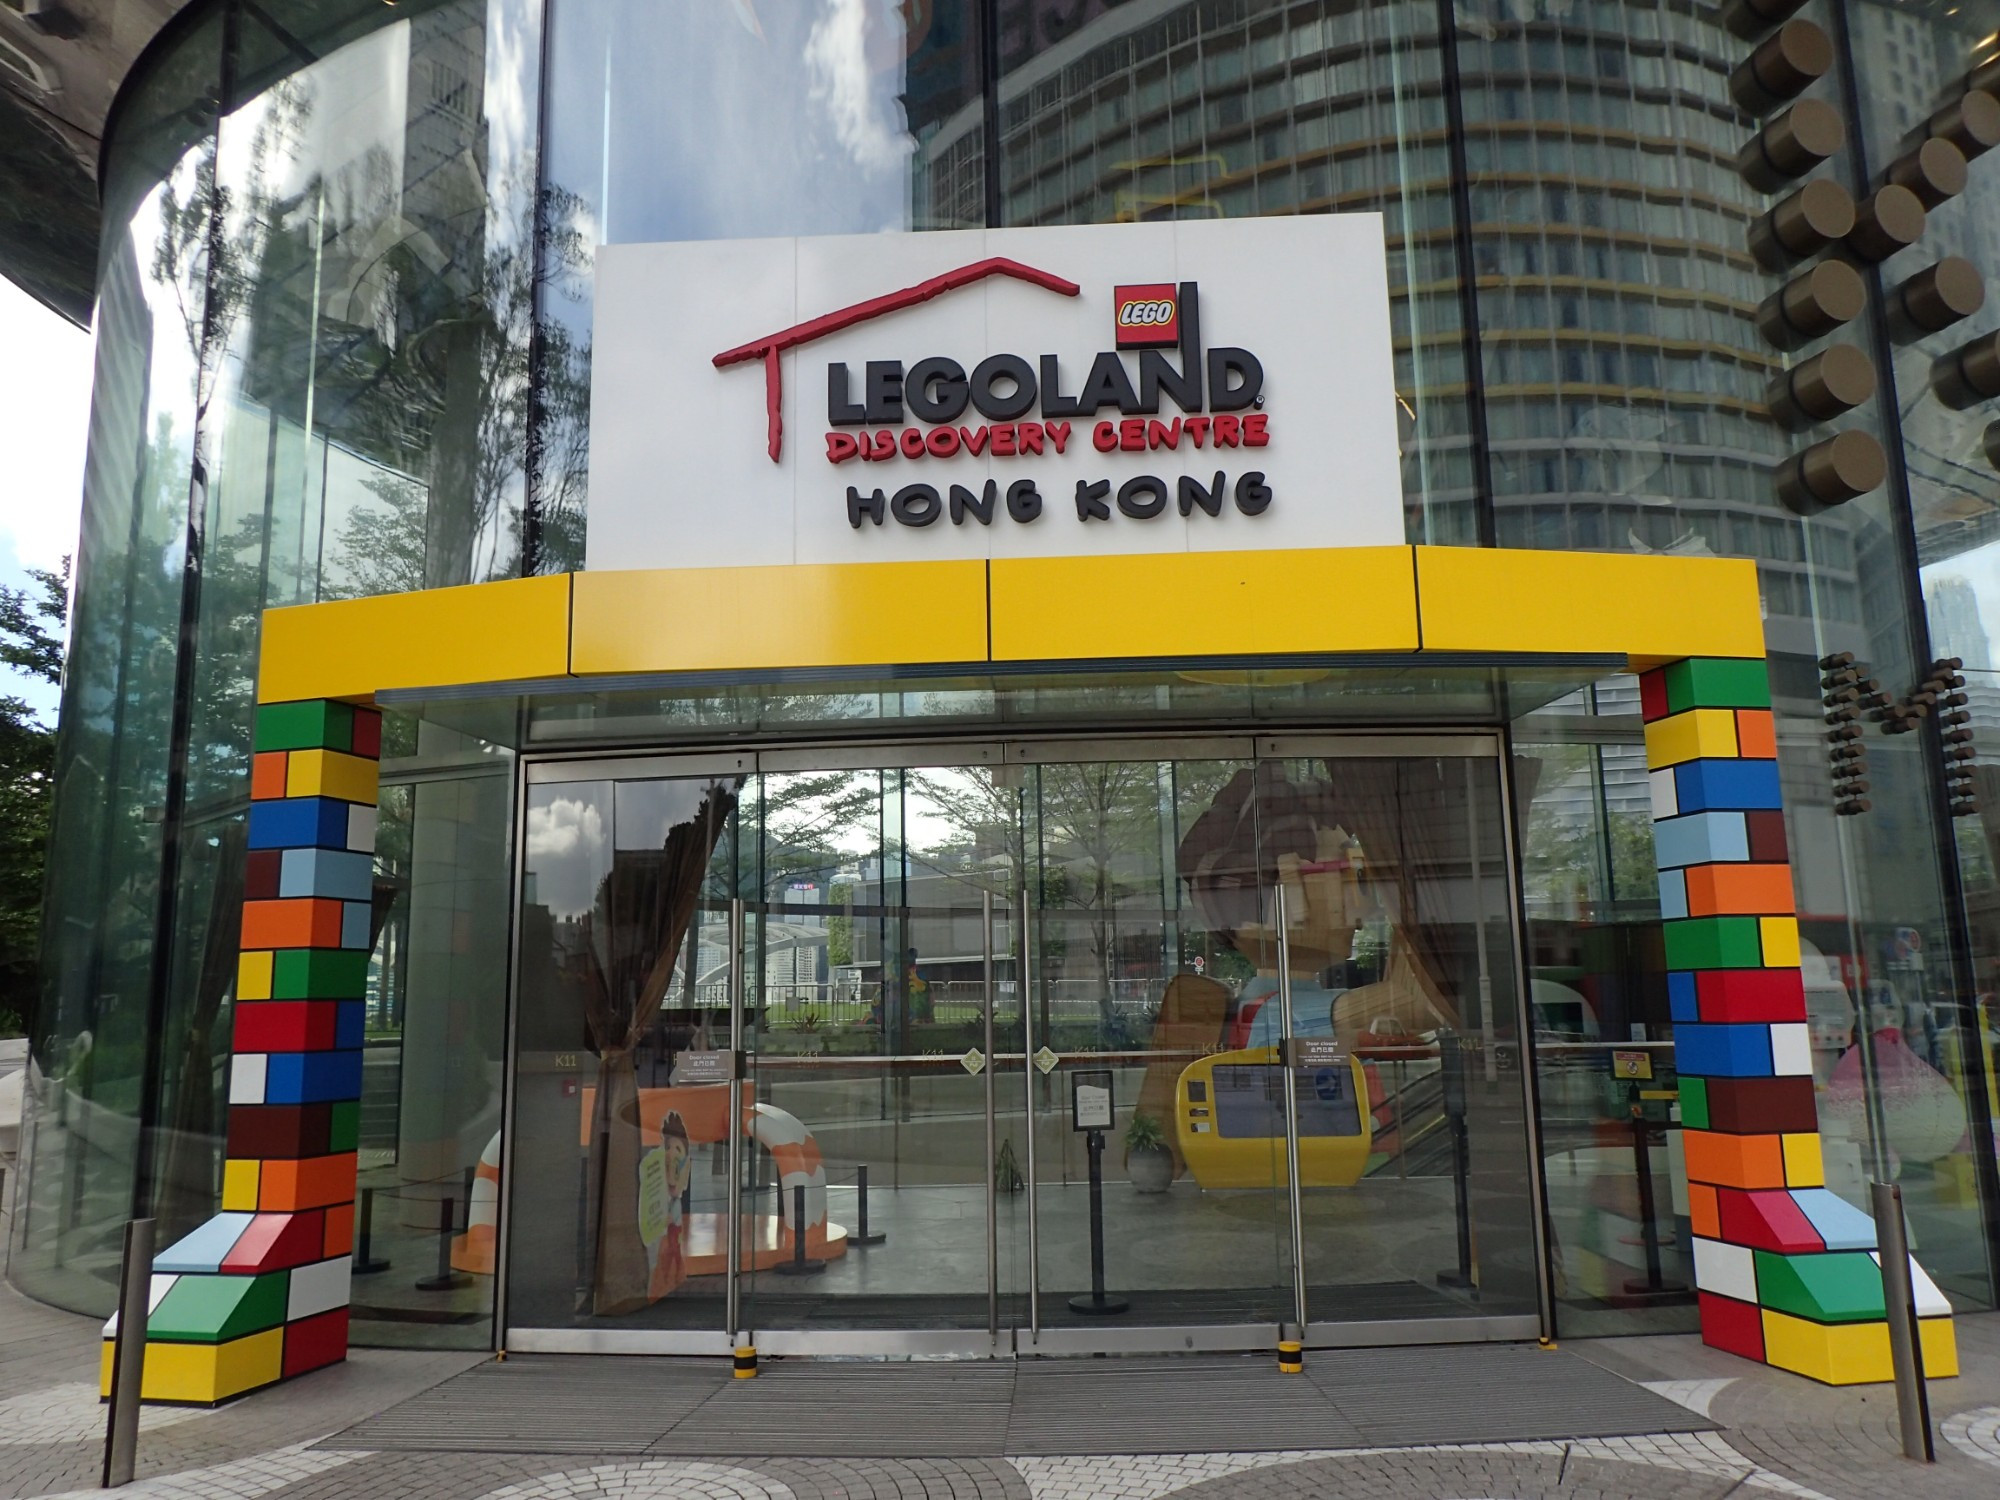 Legoland Discovery Centre Hong Kong, Hong Kong